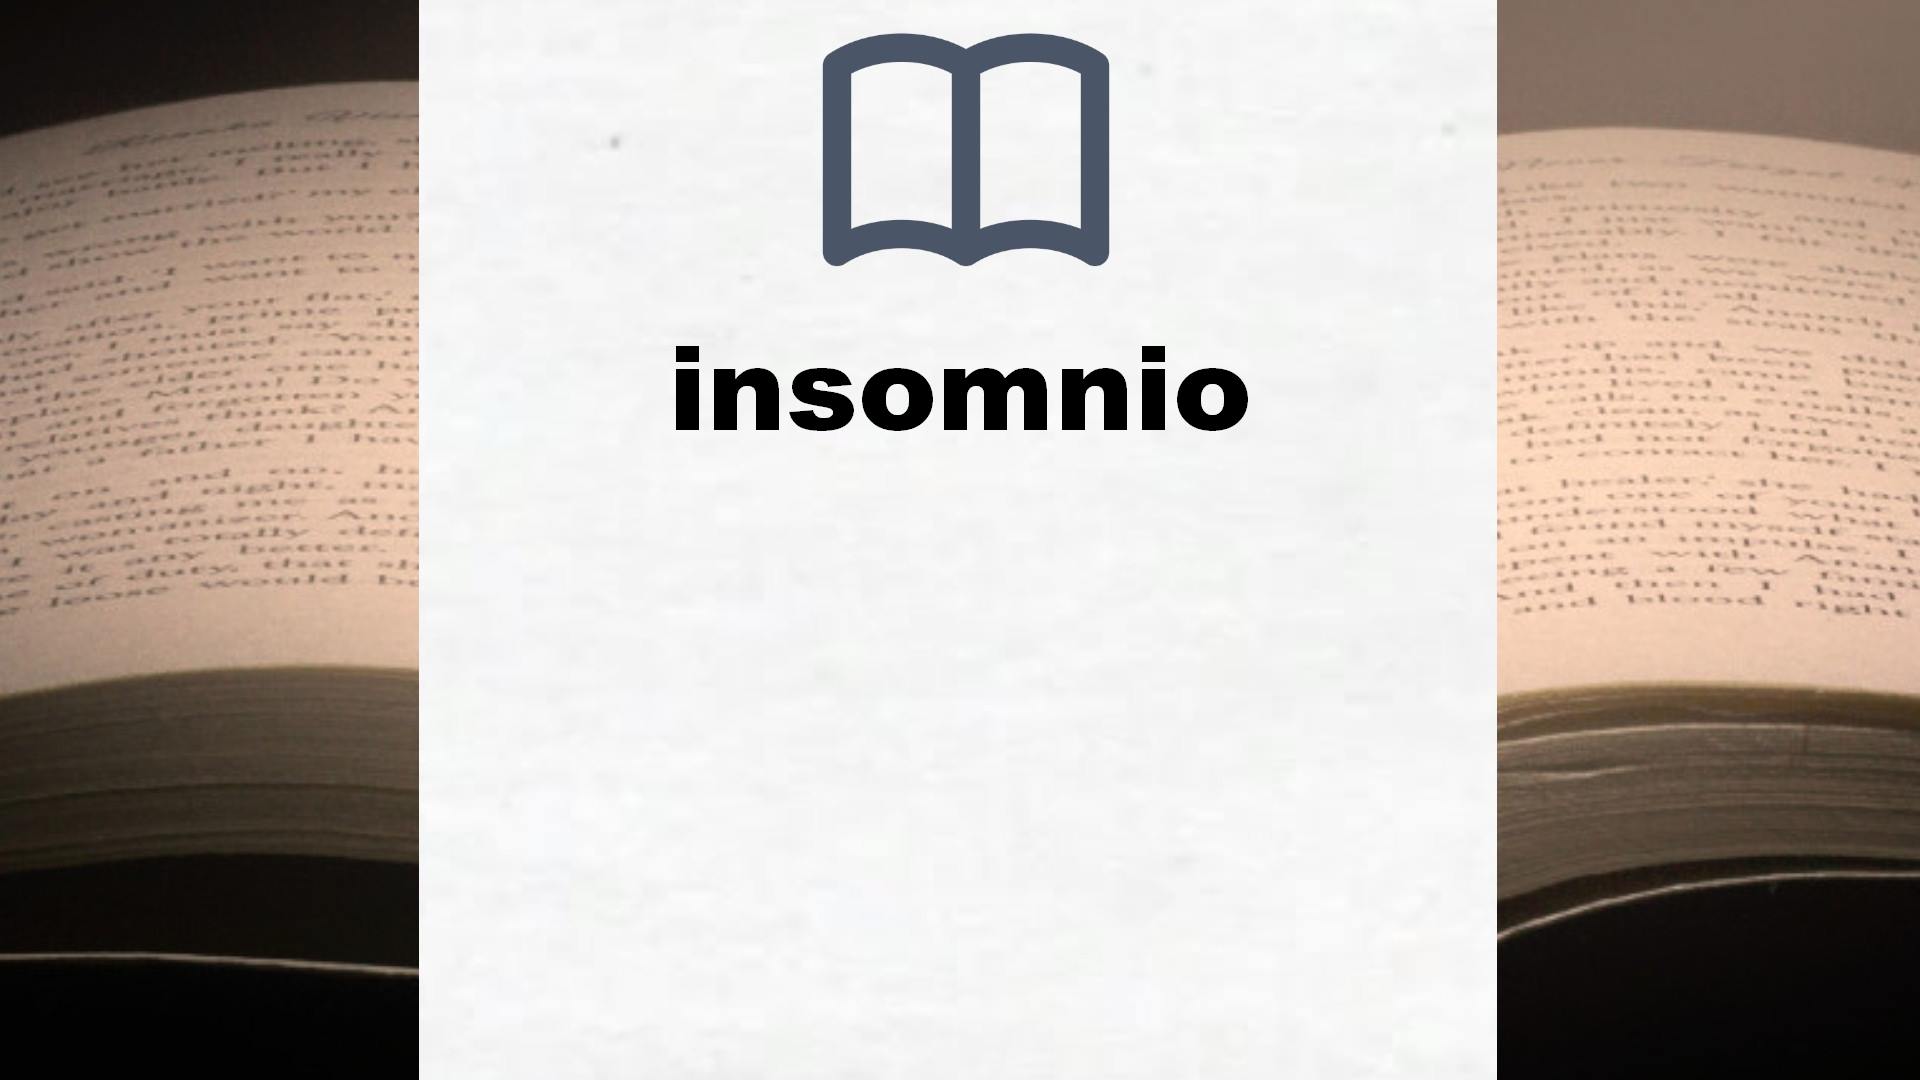 Libros sobre insomnio